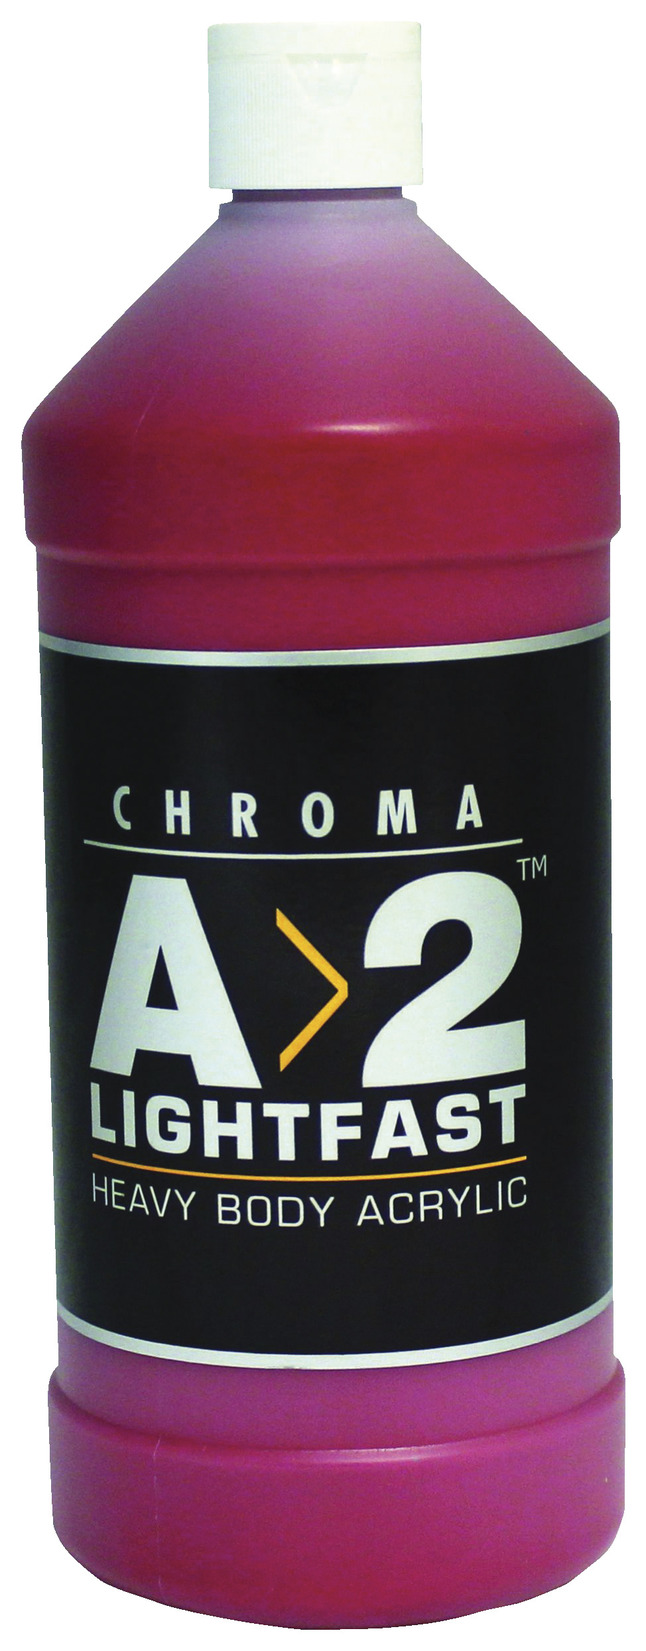 Chroma A>2 Lightfast Heavy Body Acrylic Paint, 33.98 ...